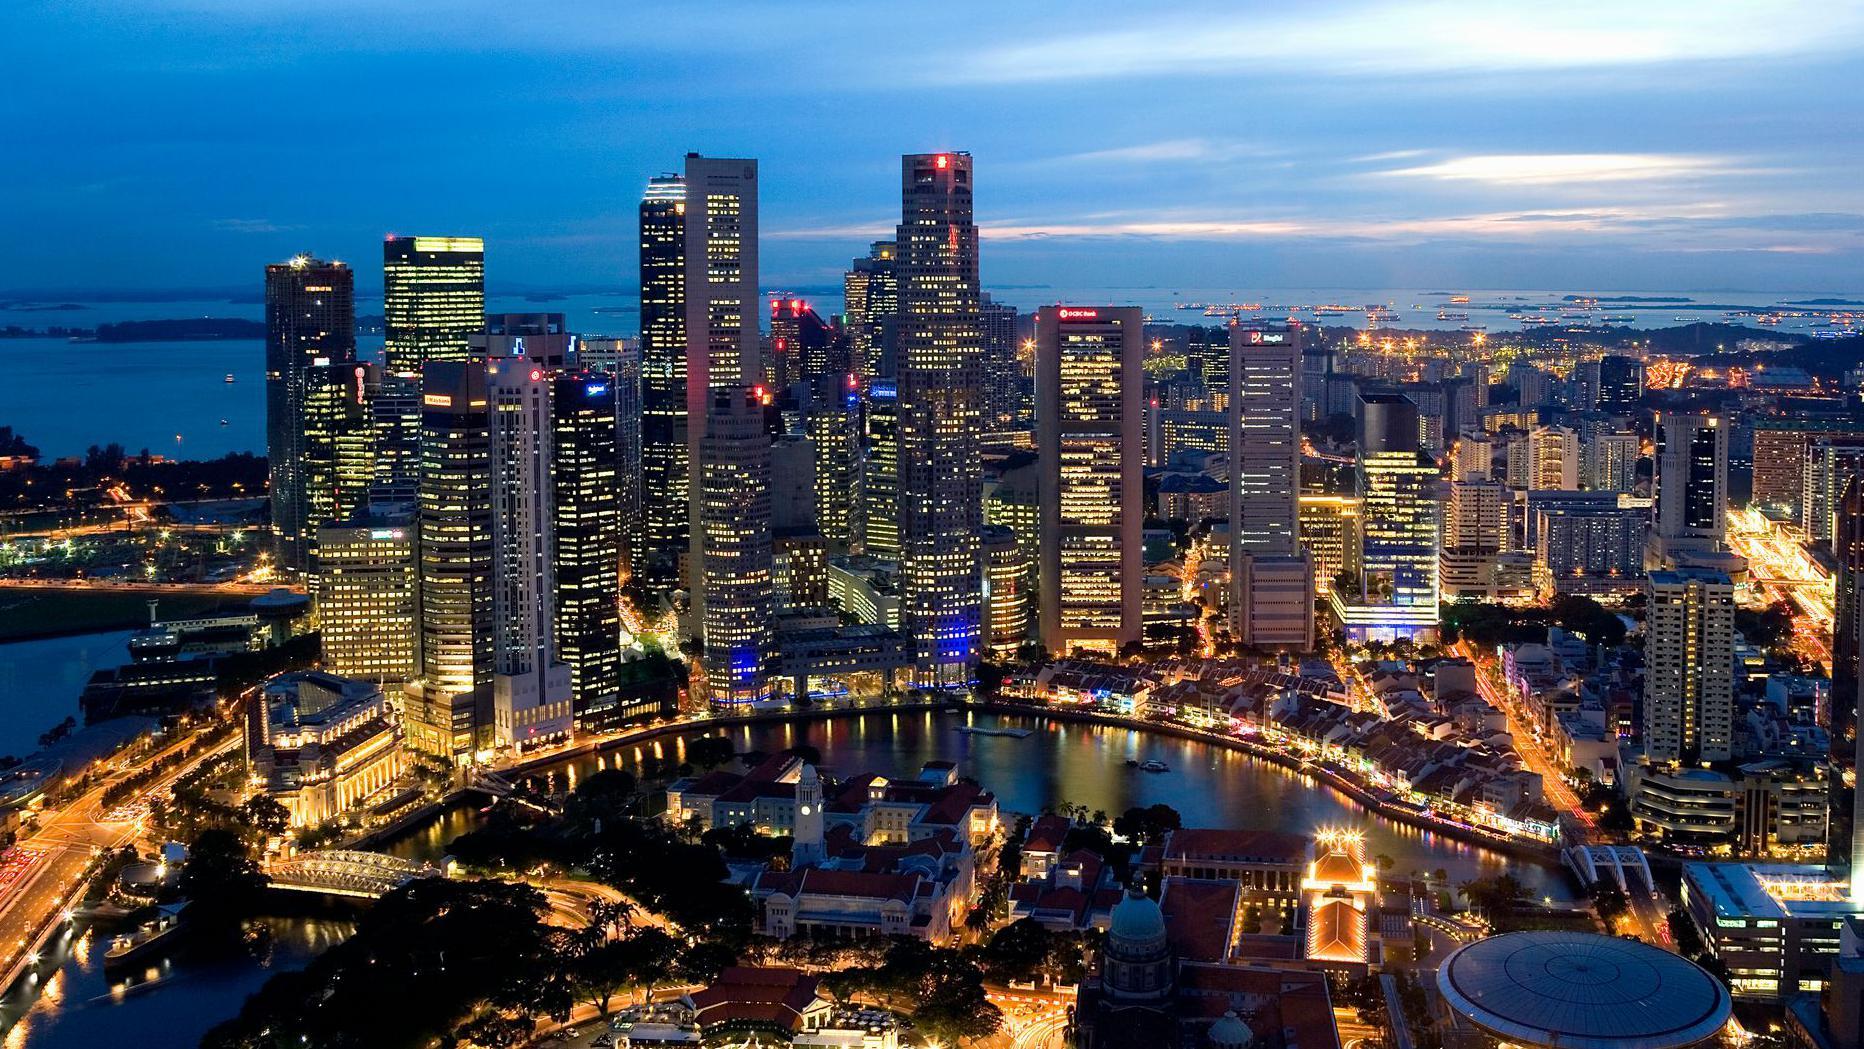 Singapur ocupa el primer puesto del ránking del EIU.

Getty Images